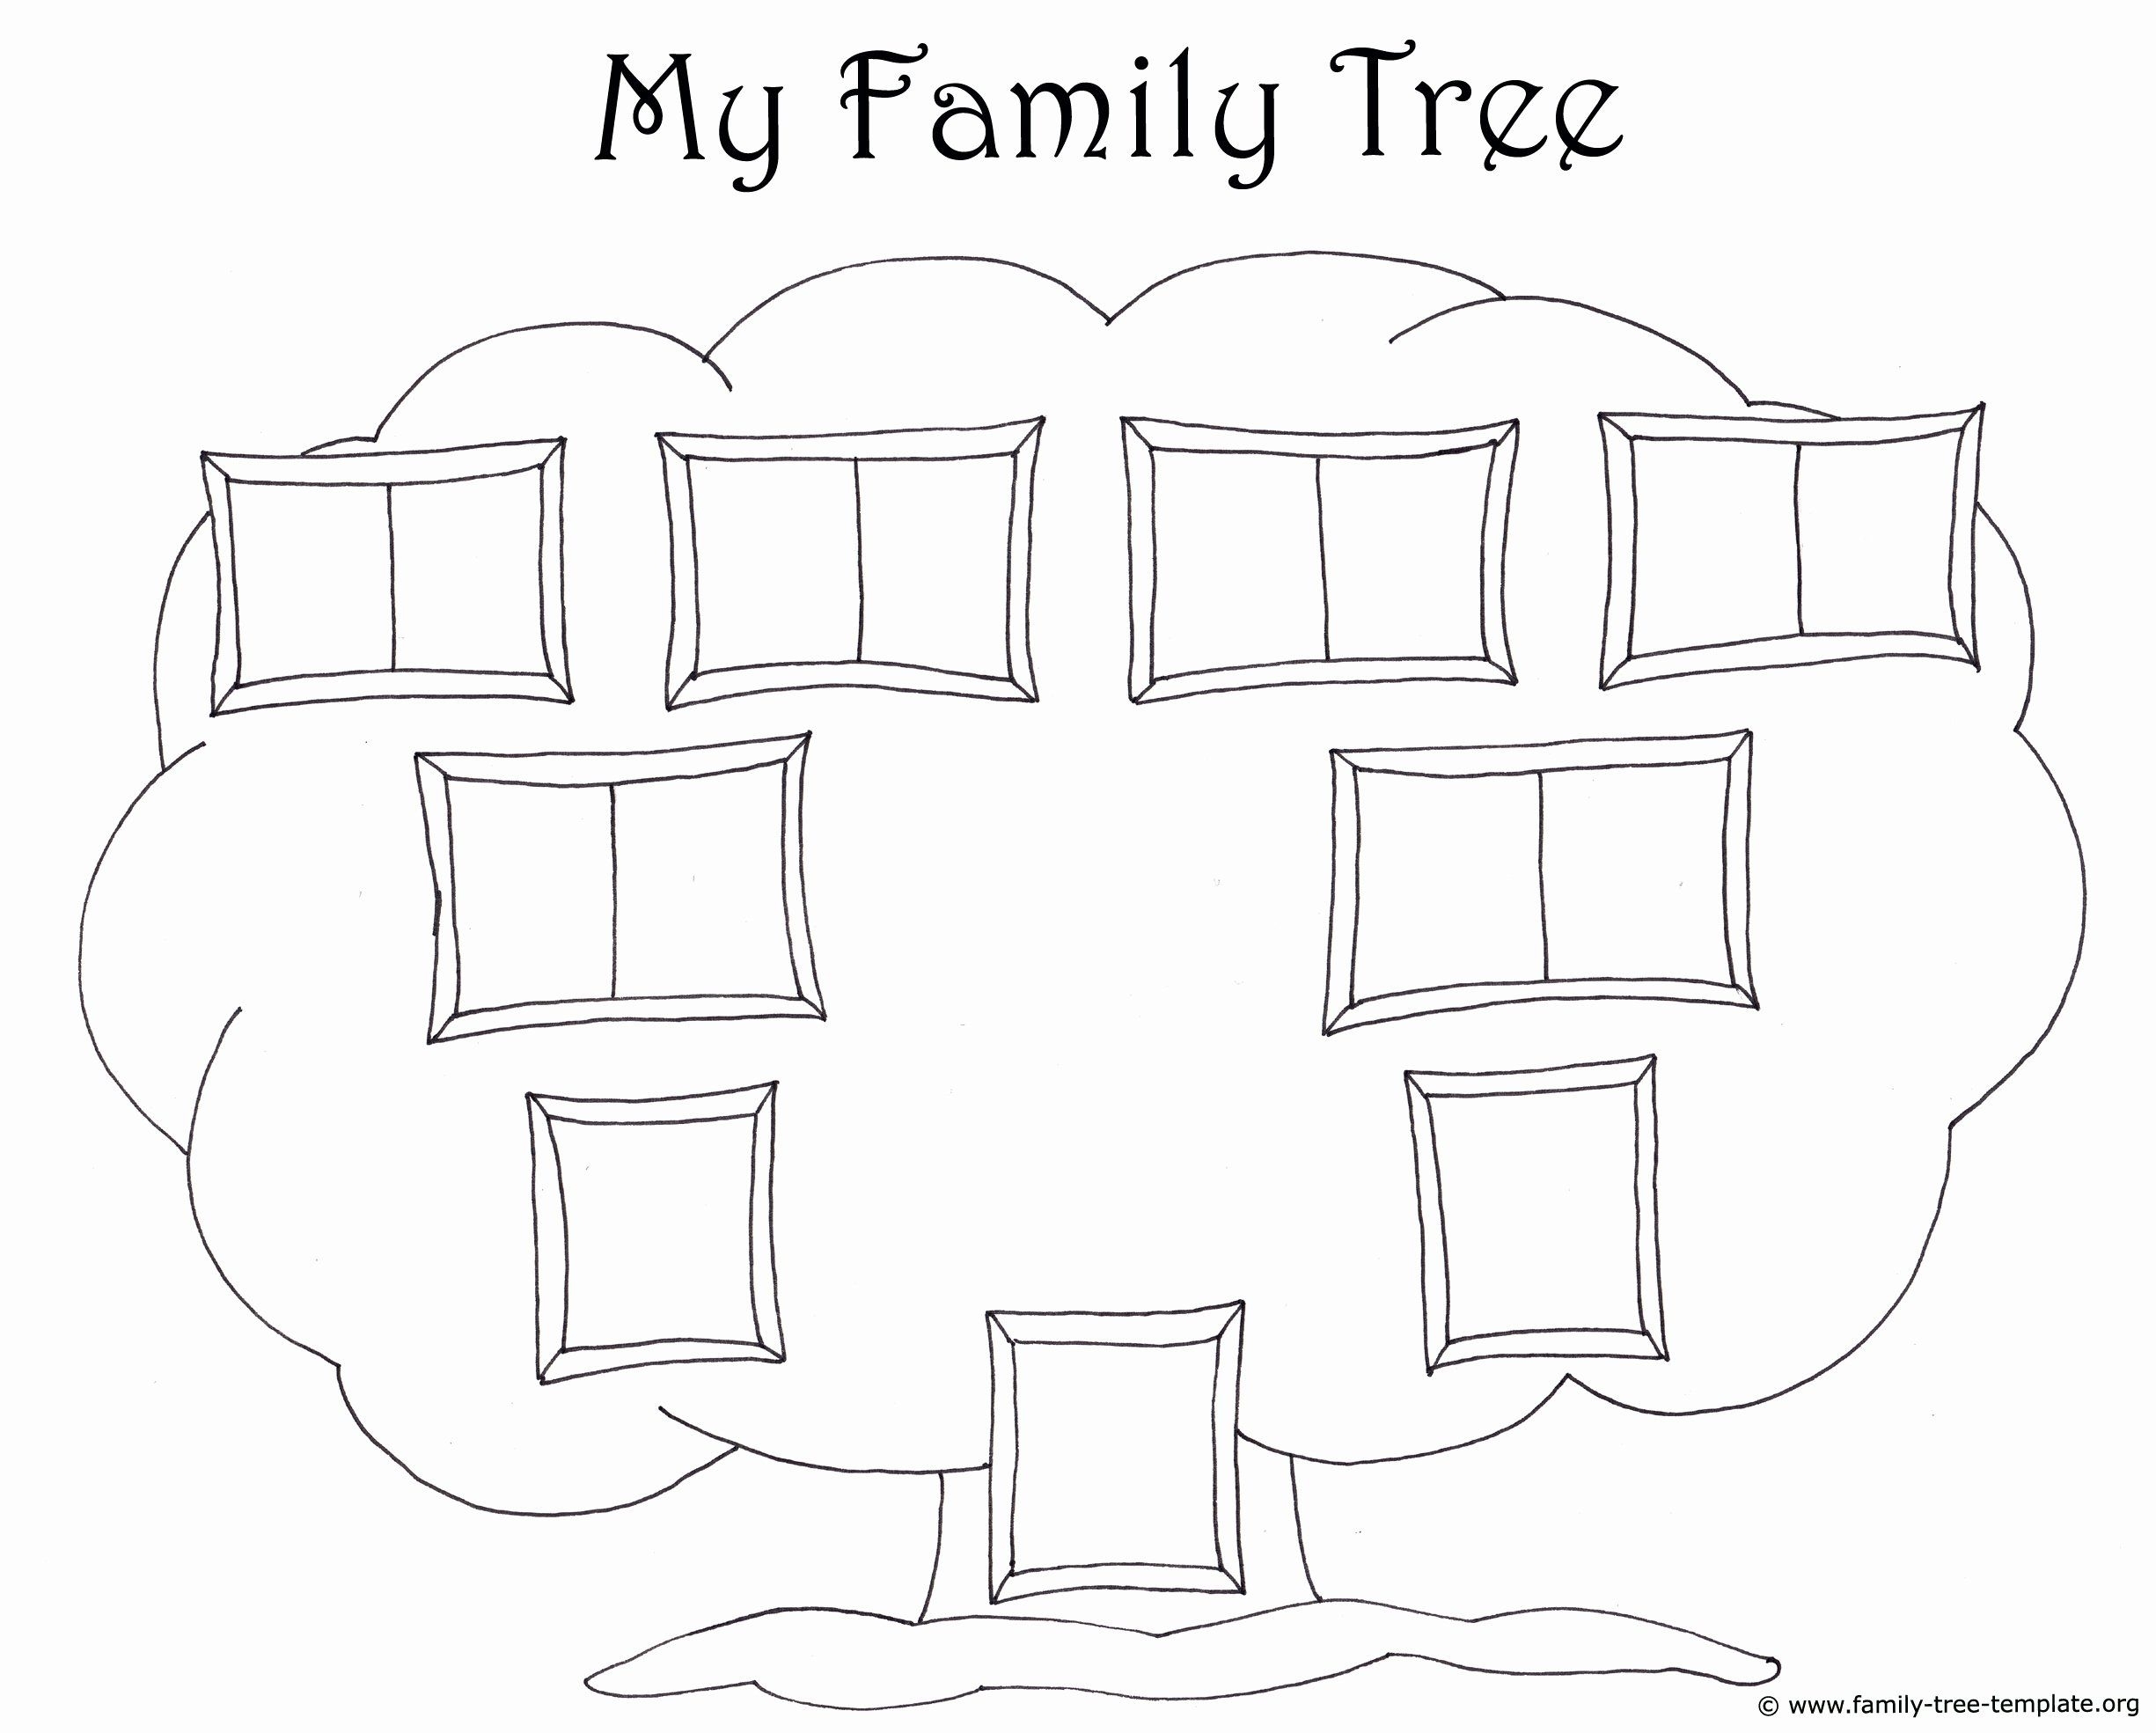 Как нарисовать семейное дерево: своими руками ребенку в школу